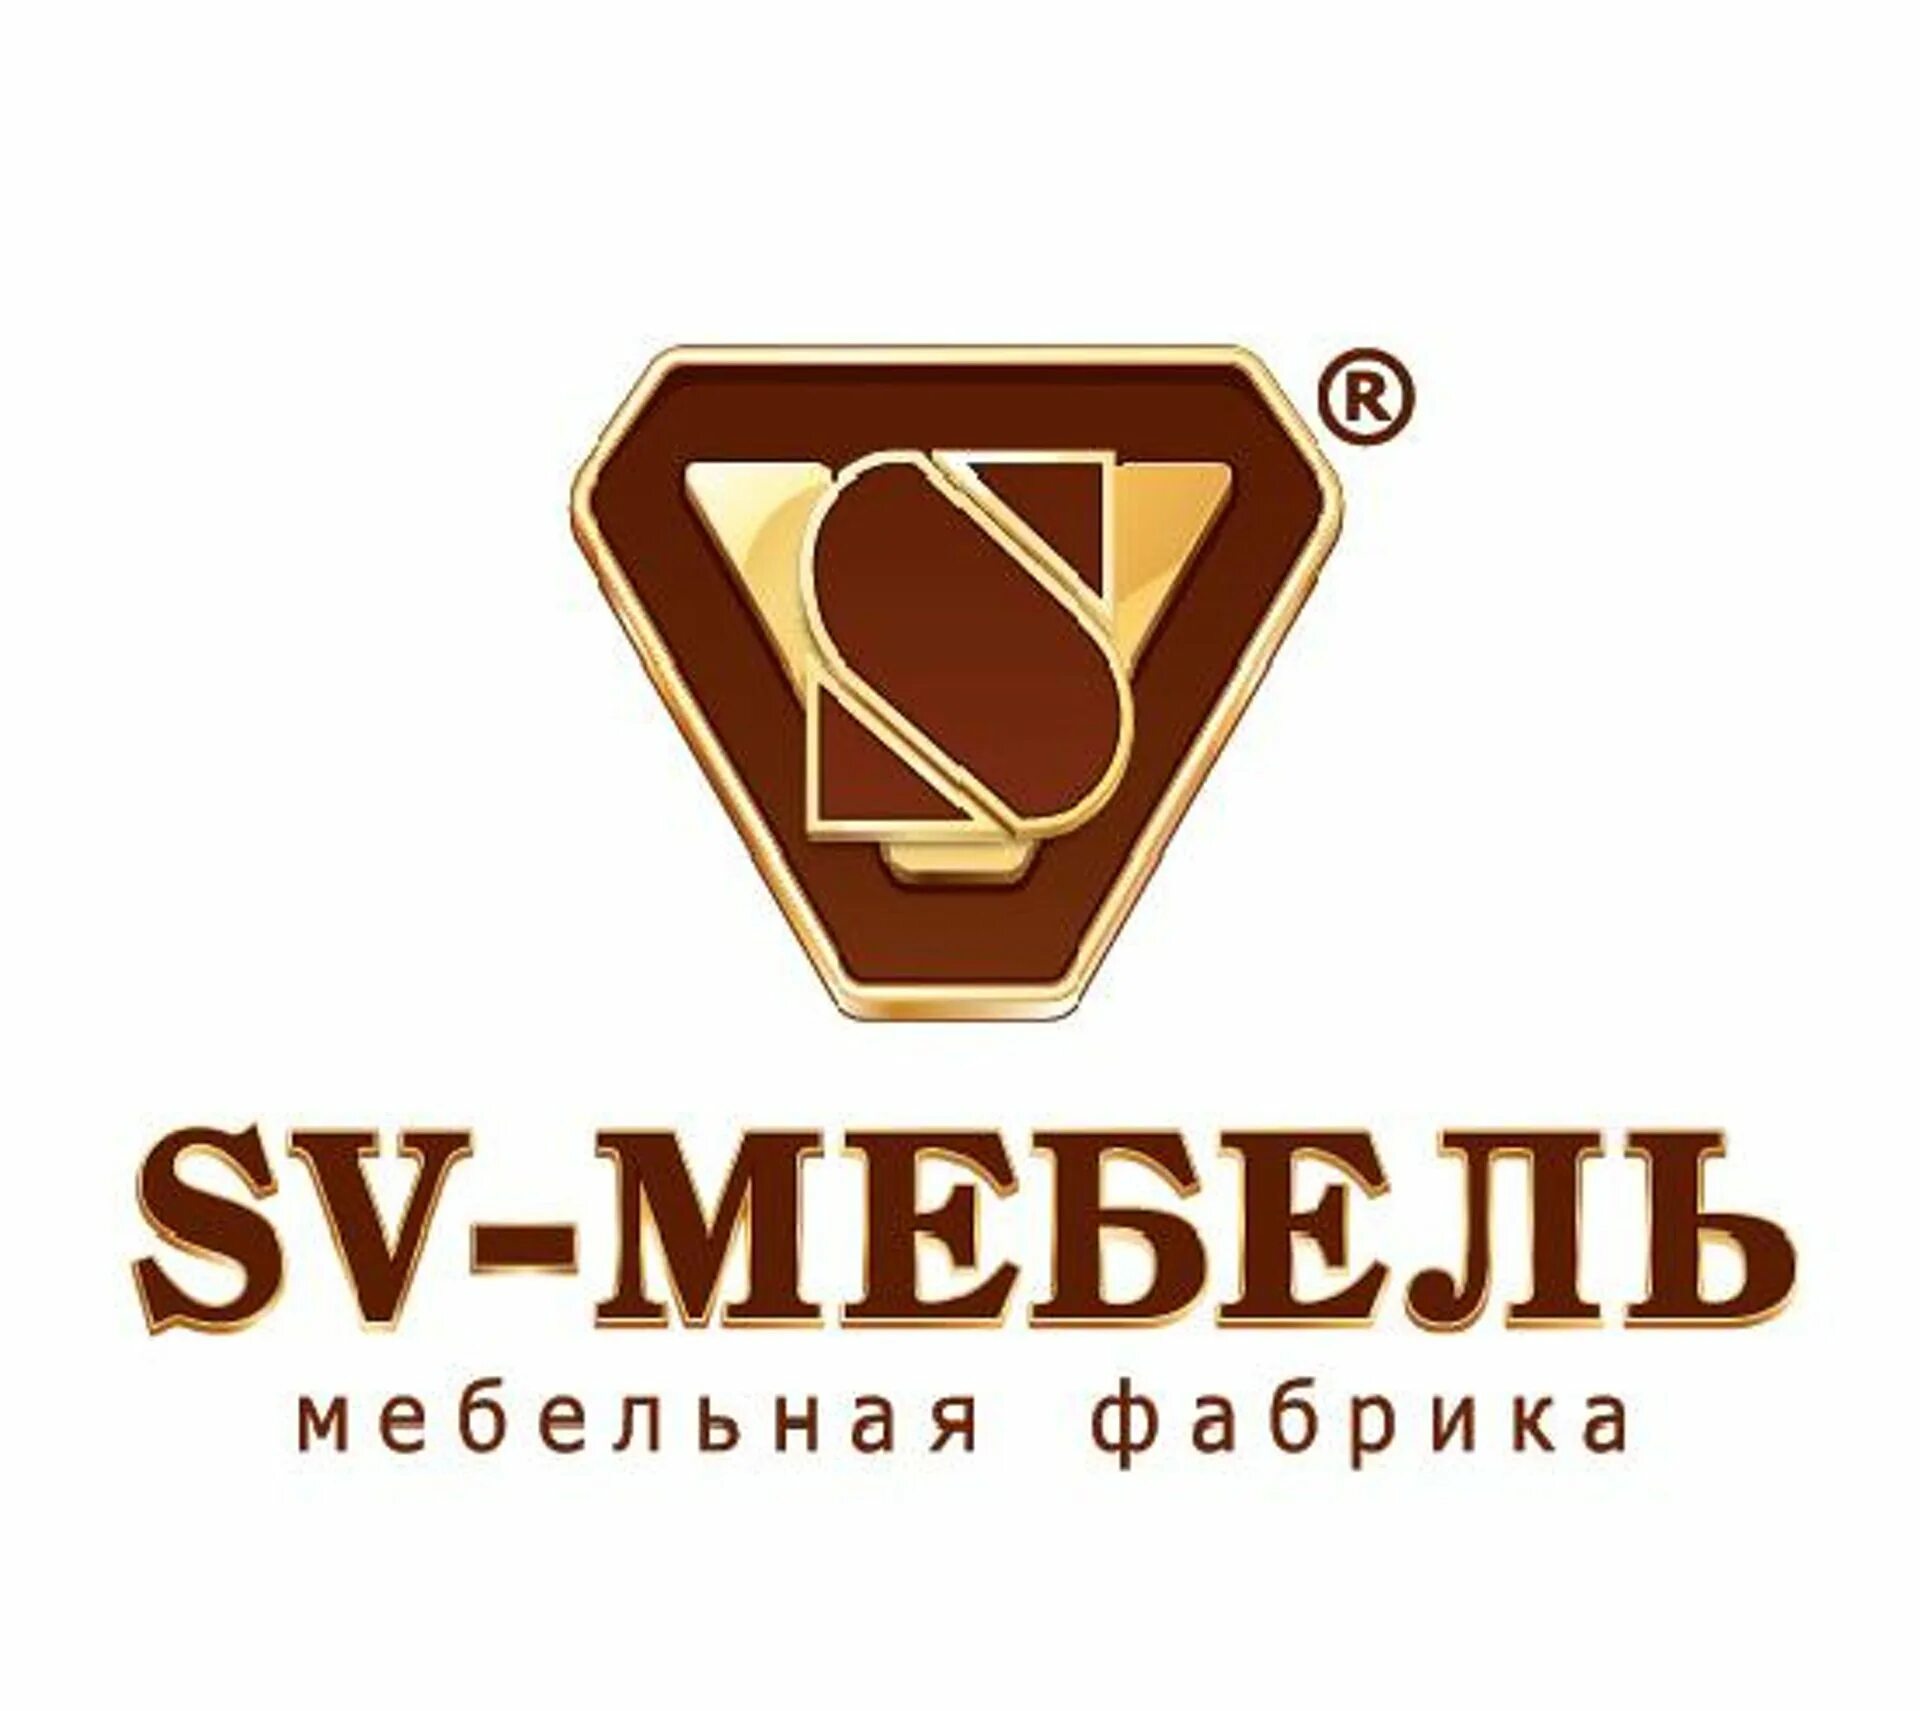 Организация св. SV mebel логотип. Логотип мебельной фабрики. Мебельные логотипы. SV-мебель Пенза логотип.